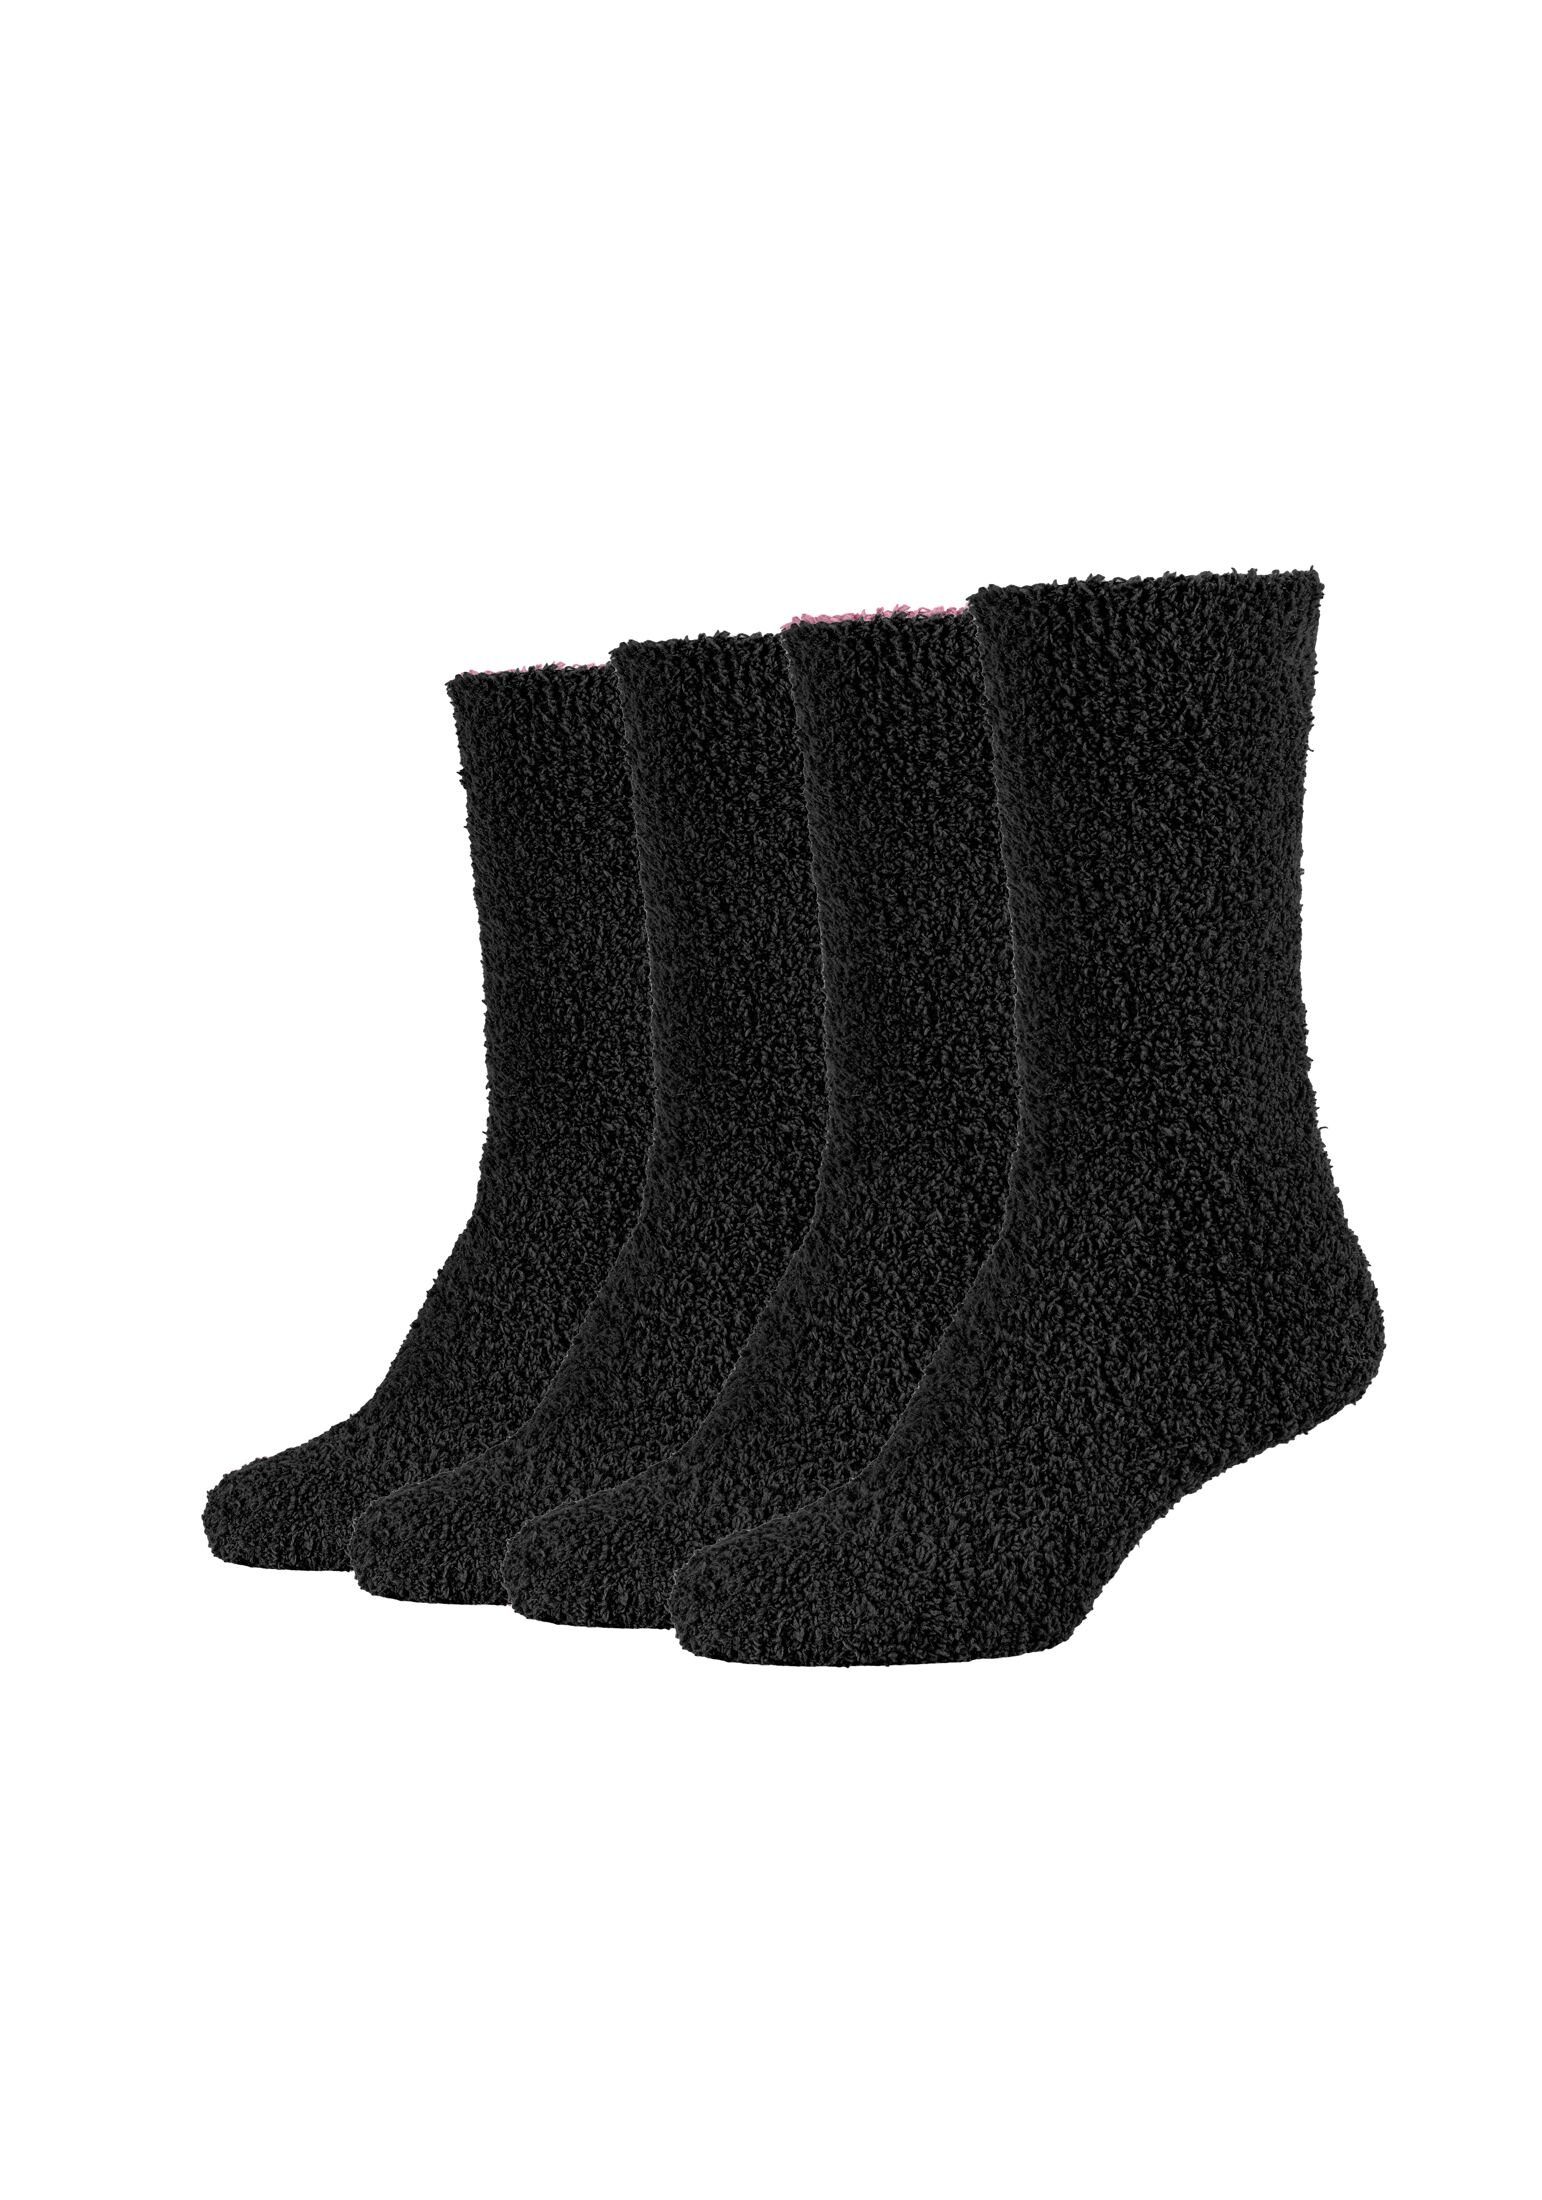 mix Socken Socken black Kuschelsocken Flauschig Warm Damen Camano Cosy Lang